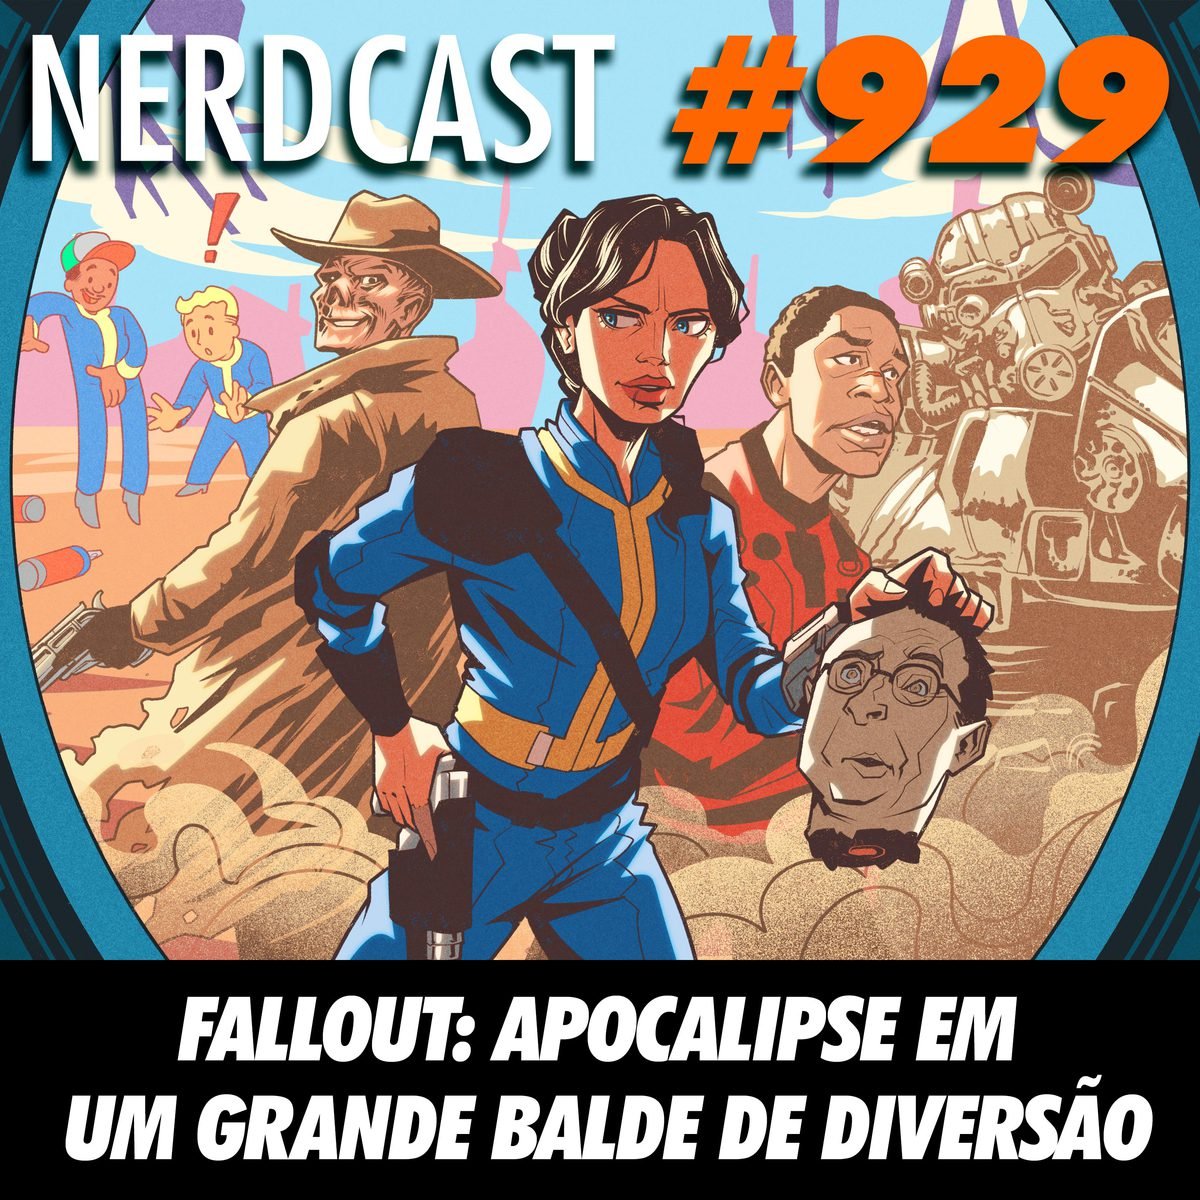 NerdCast 929 - Fallout: apocalipse em um grande balde de diversão